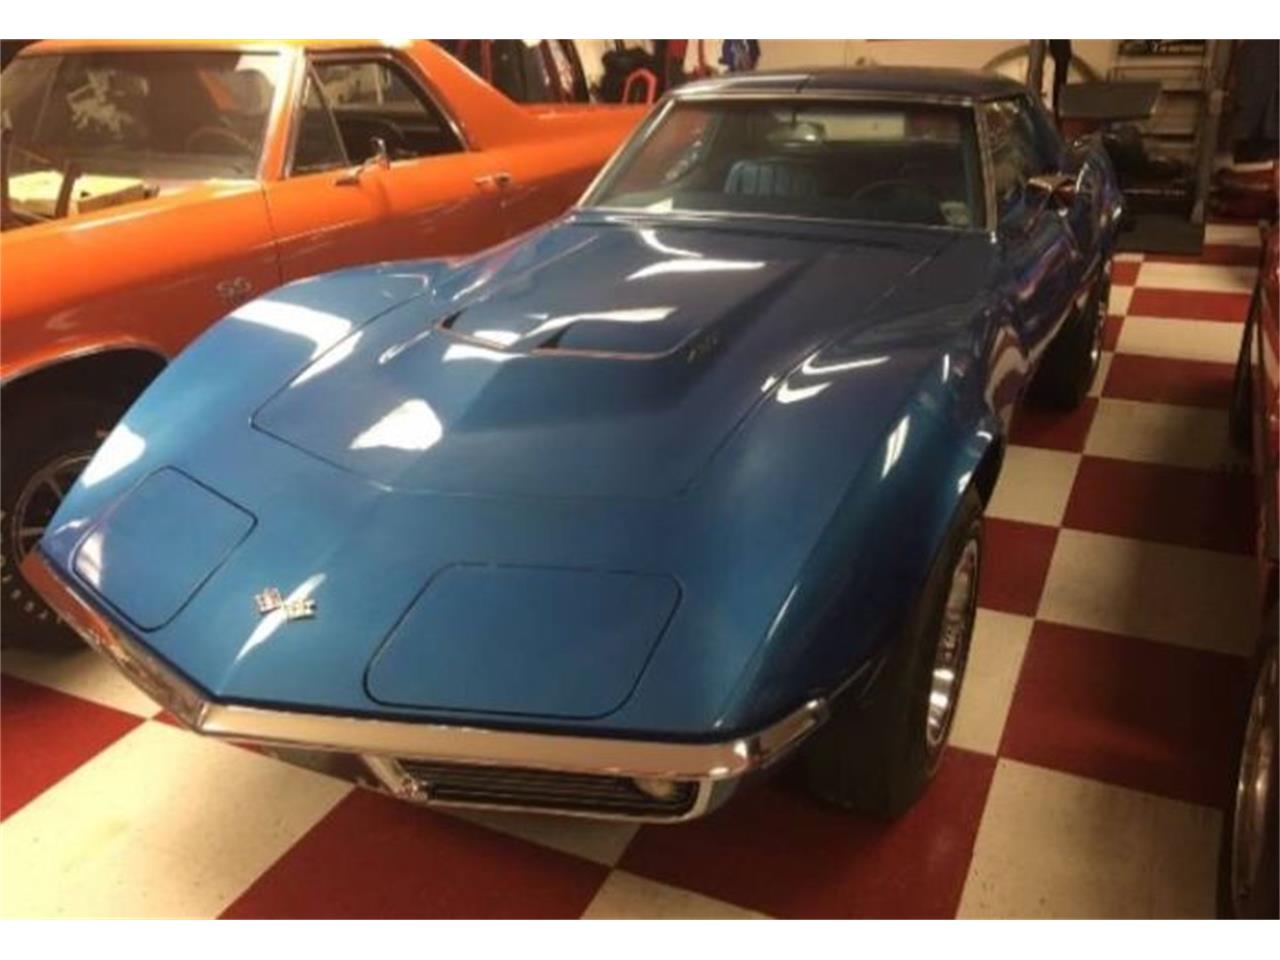 1968 Chevrolet Corvette for sale in Cadillac, MI